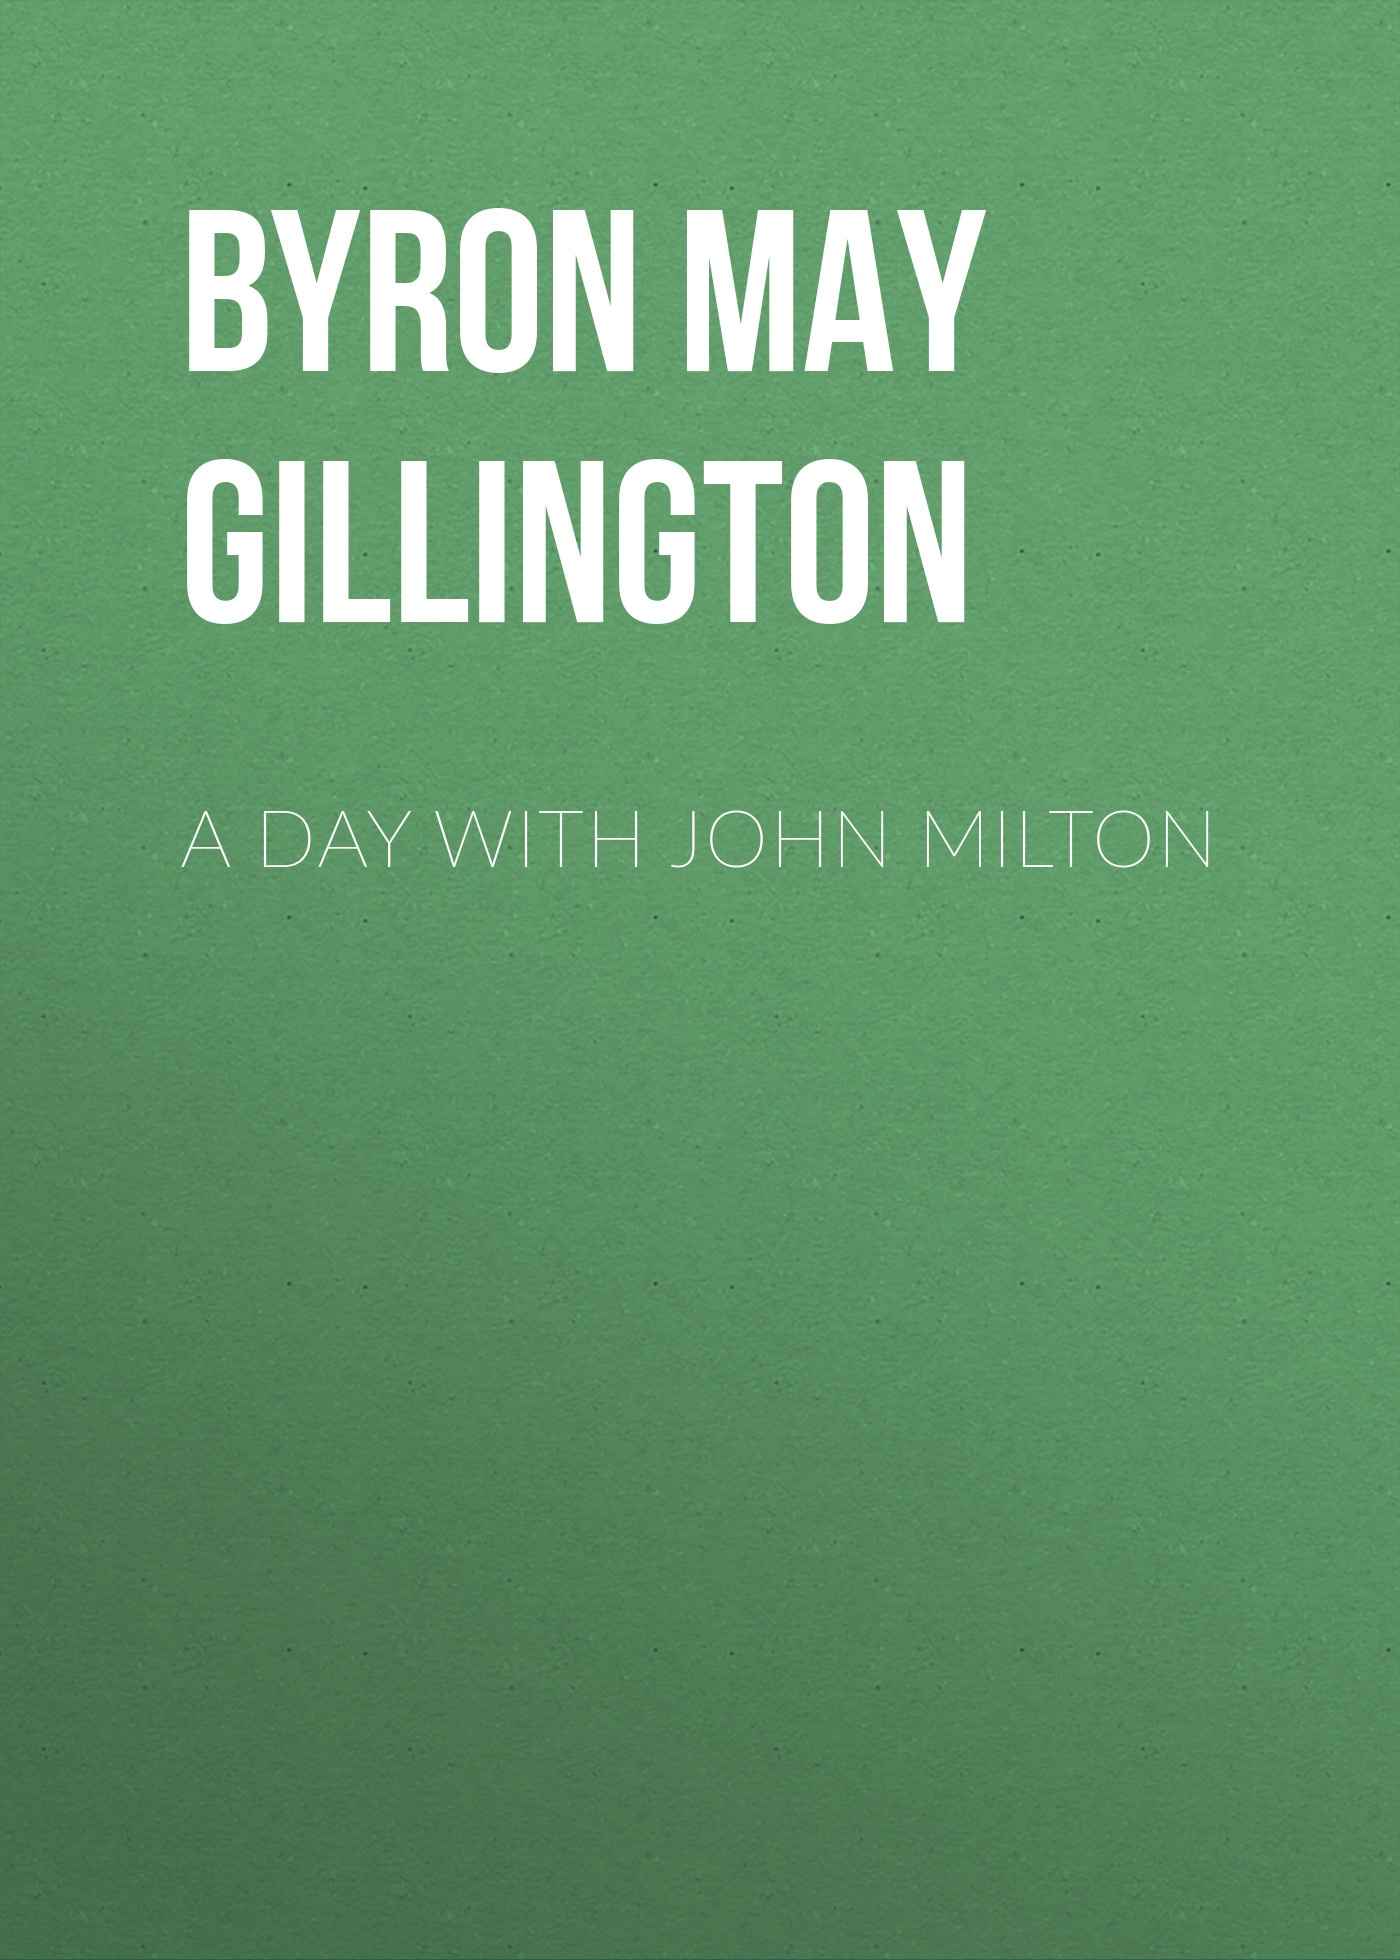 Книга A Day with John Milton из серии , созданная May Byron, может относится к жанру Зарубежная старинная литература, Зарубежная классика. Стоимость электронной книги A Day with John Milton с идентификатором 24170684 составляет 0 руб.